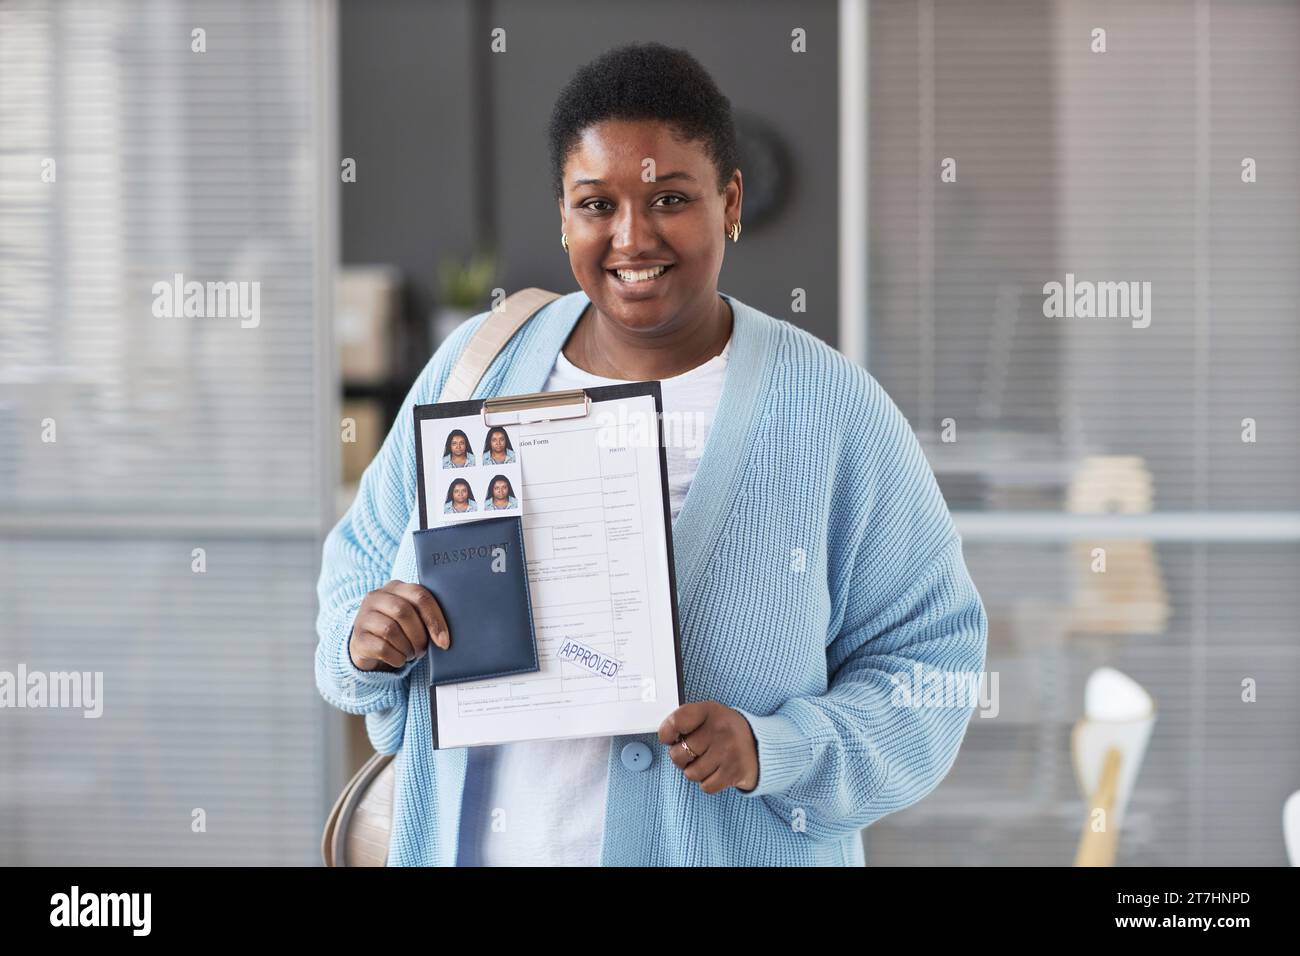 Junge afroamerikanische Bewerberin in Casualwear, die mit einem Lächeln in die Kamera schaut, während sie ein genehmigtes Visumantragsformular vorzeigt Stockfoto